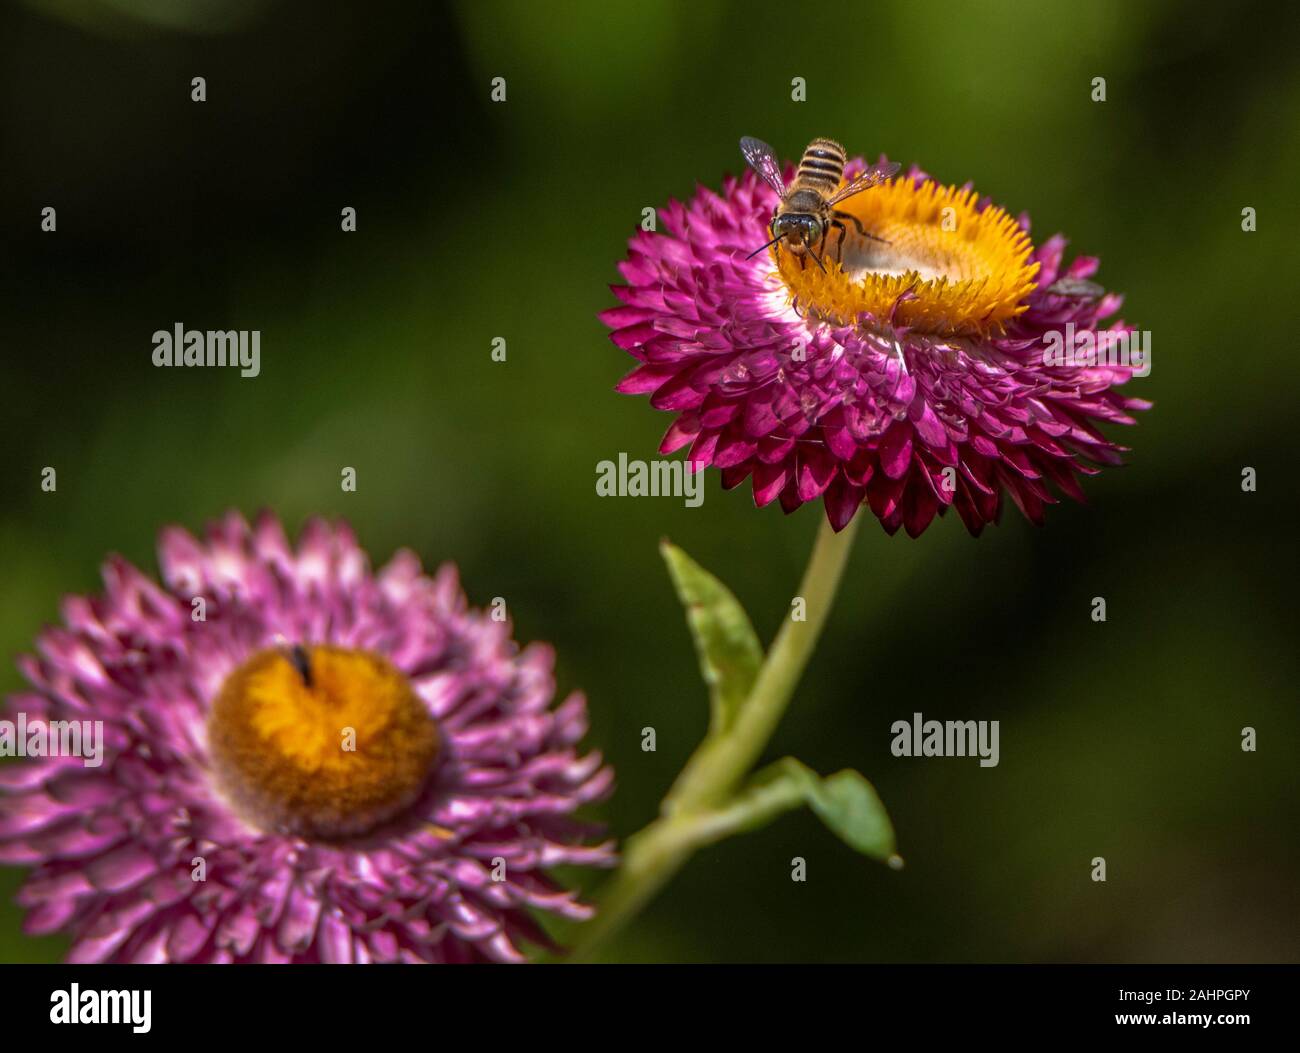 Australian native bee on flower Stock Photo